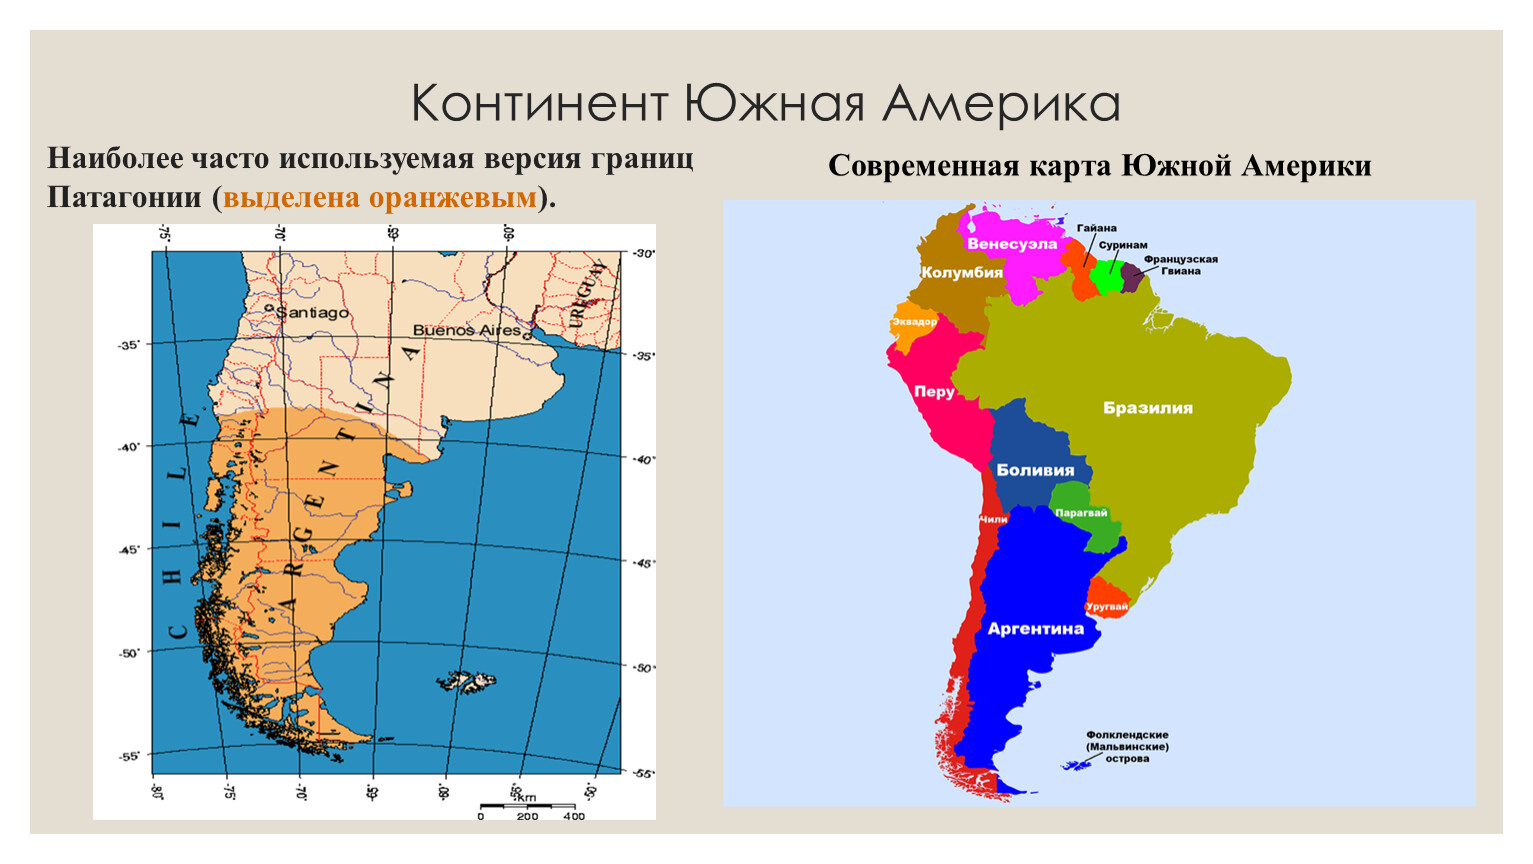 Какая из стран расположена в южной америке. Географическое положение Патагонии в Южной Америке. Карта Южной Америки. Патагония на карте Южной Америки. Границы Южной Америки.